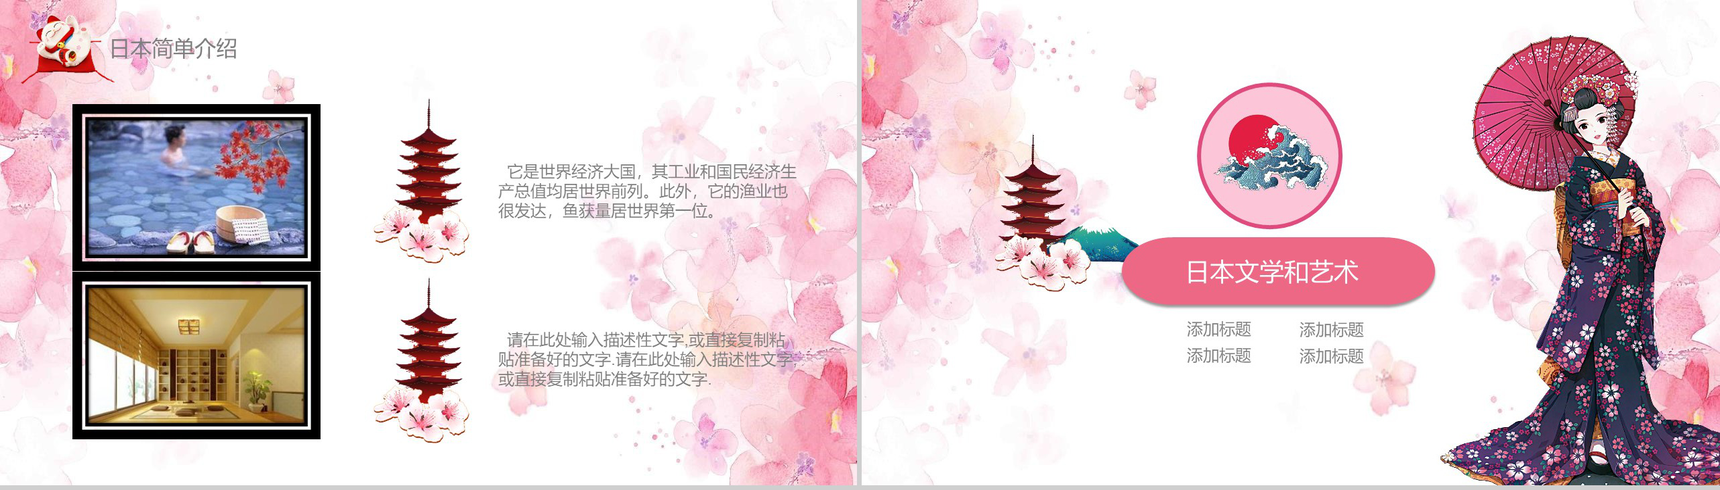 粉色日系和风日本文化介绍PPT模板-5